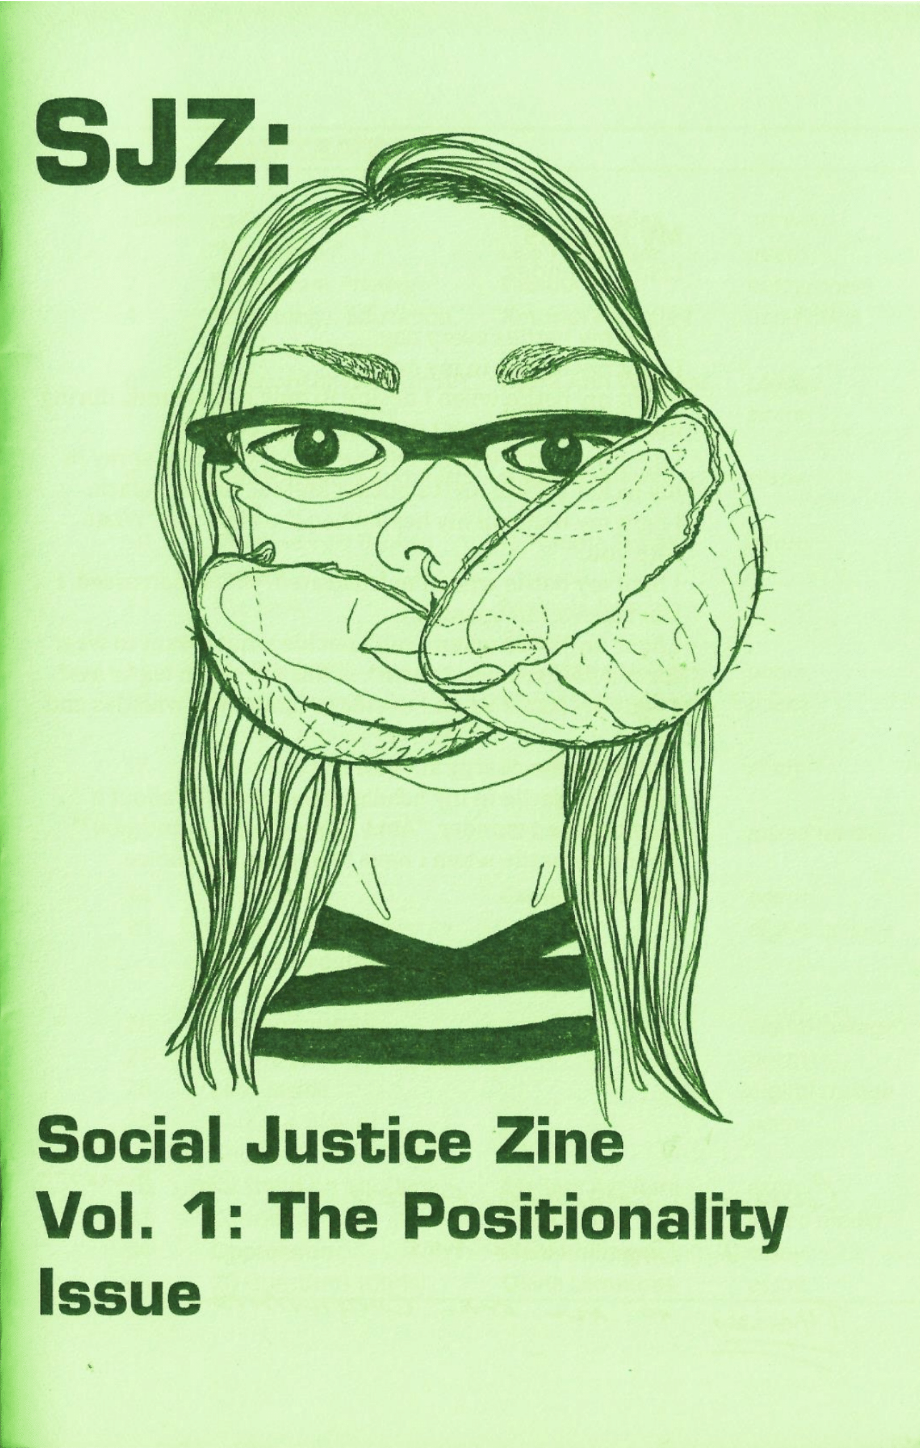 Cover of SJZ 1